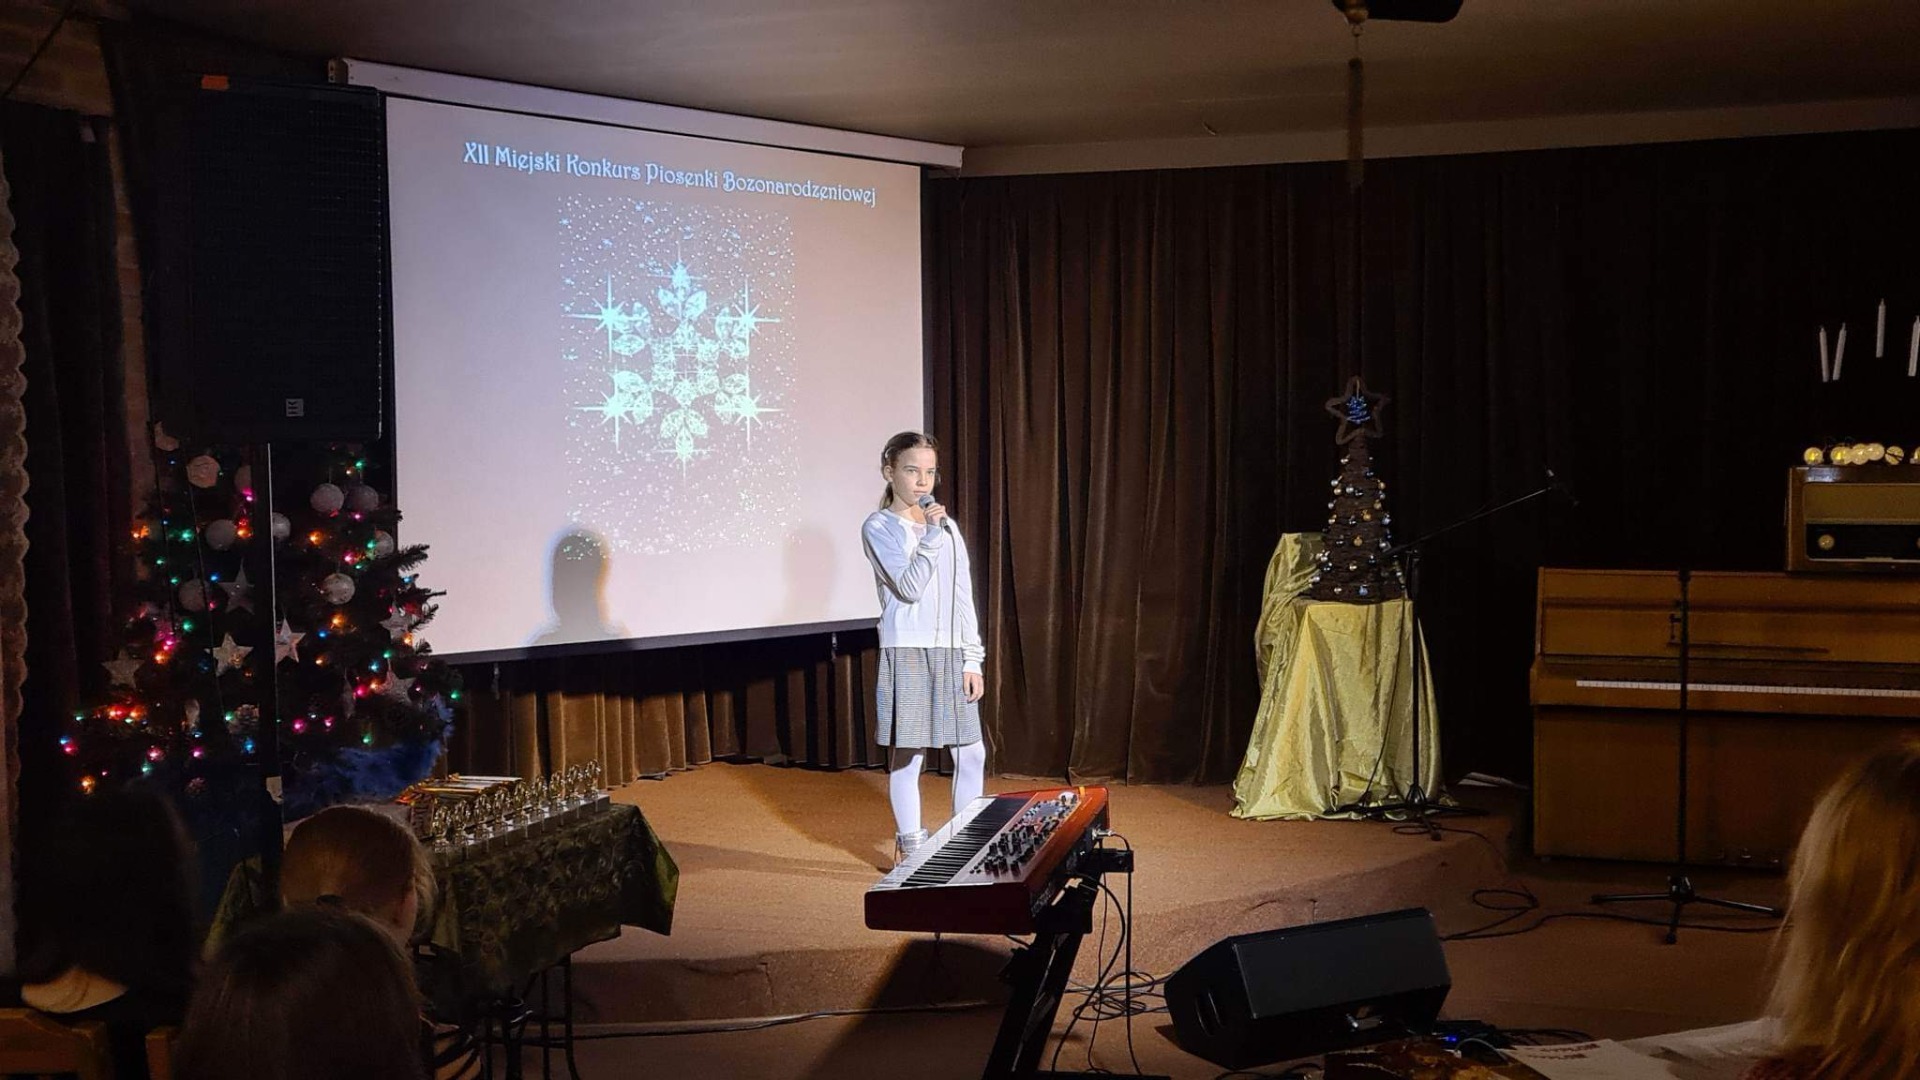 Dziewczynka w jasnym sweterku i spódnicy stoi na scenie. W ręku trzyma mikrofon. W tle widoczna dekoracja: prezentacja z motywami świątecznymi, choinka, pianino.